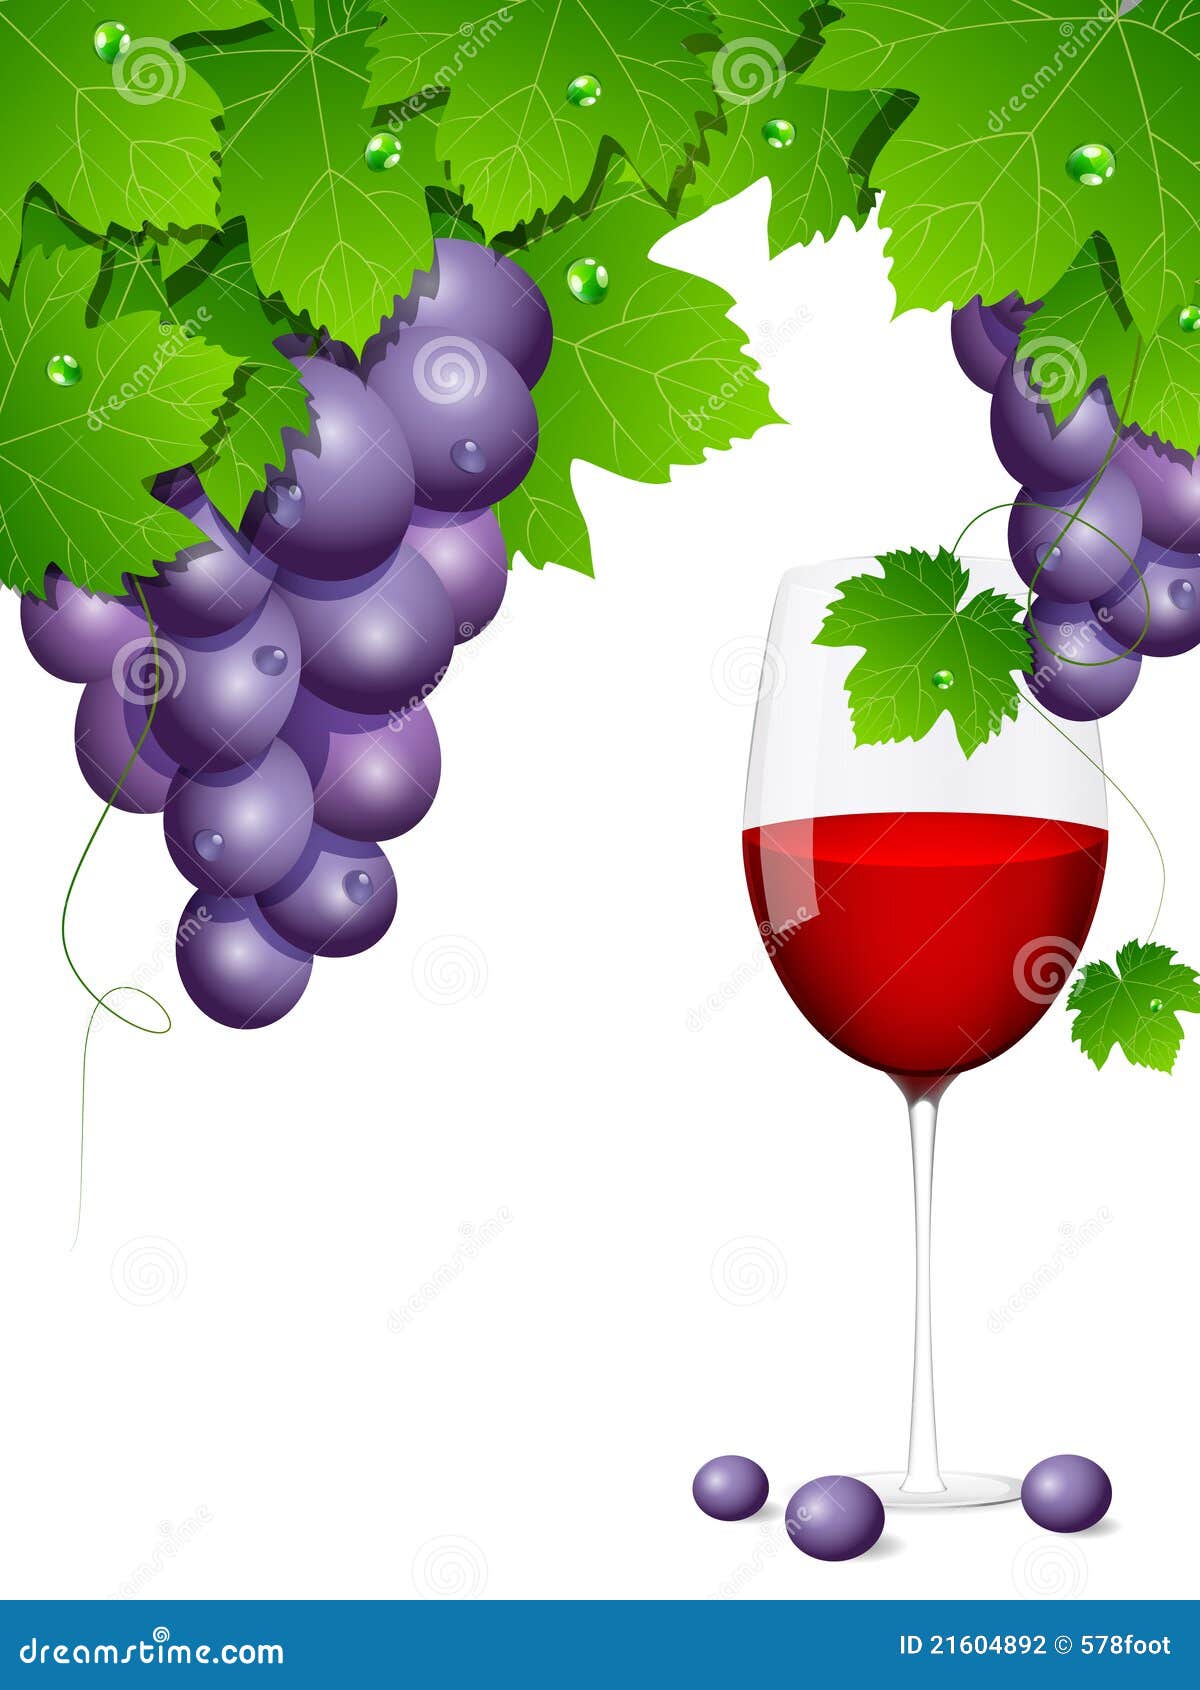 Grapes stock vector. Illustration of leaf, element, drink - 21604892